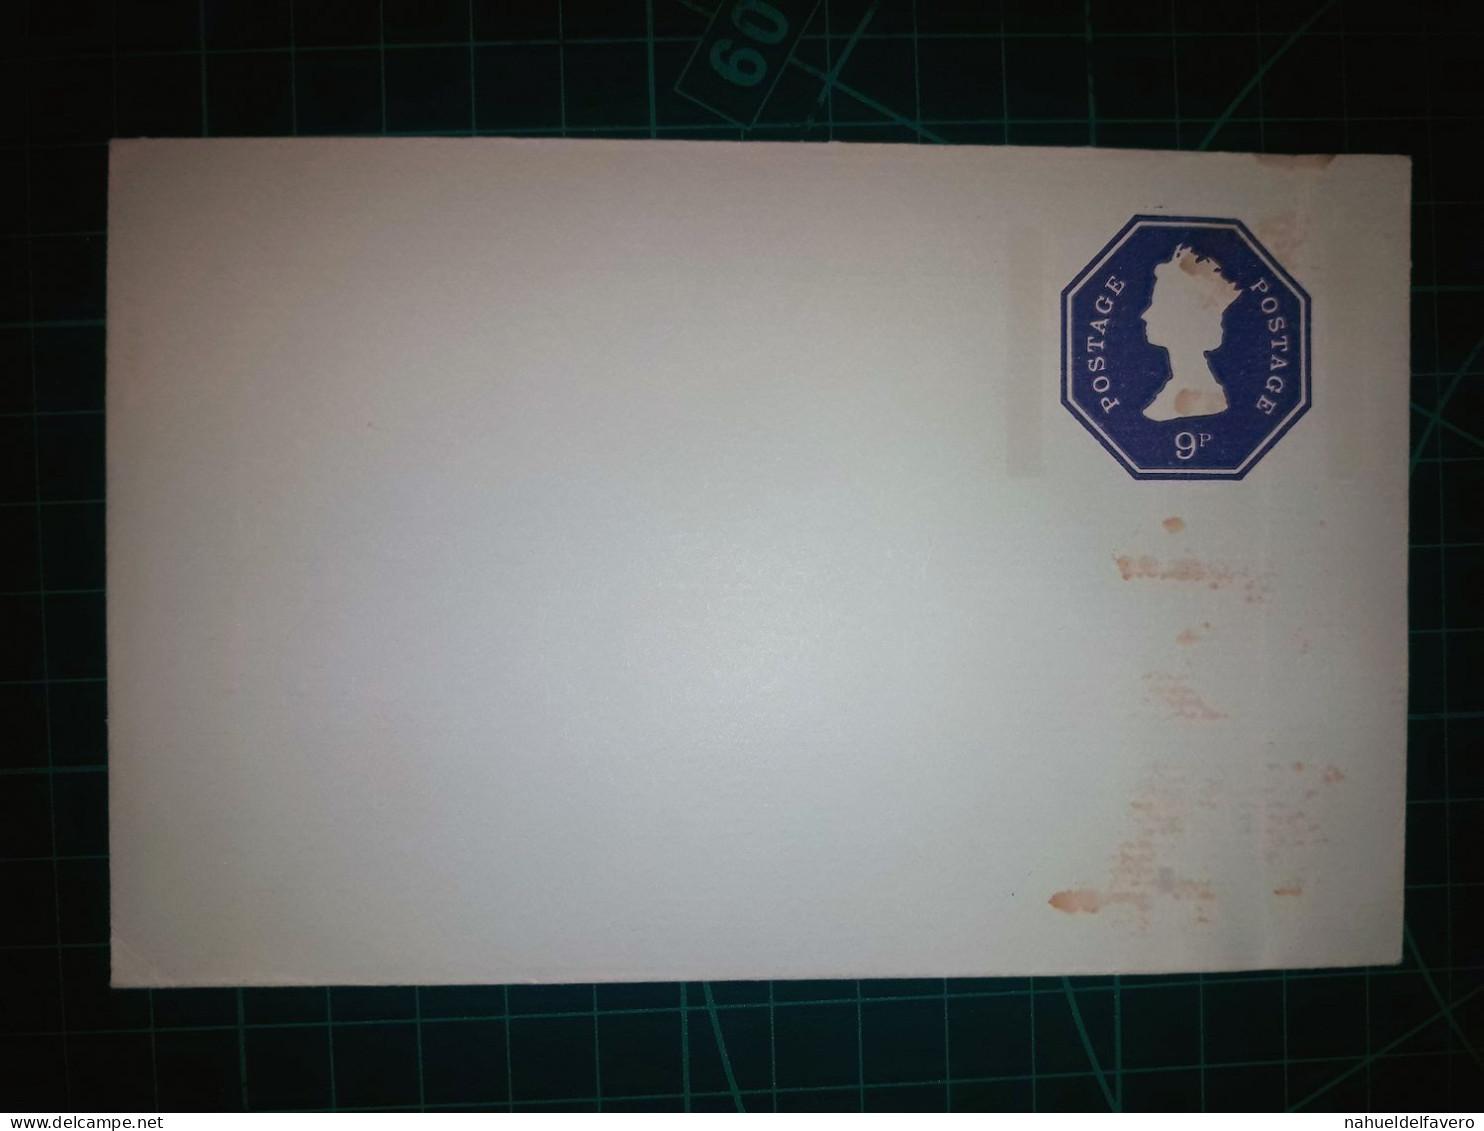 ANGLETERRE, Enveloppe Postale Entière Avec Hexagone Bleu (9 Pence). Non Circulée. - Oblitérés